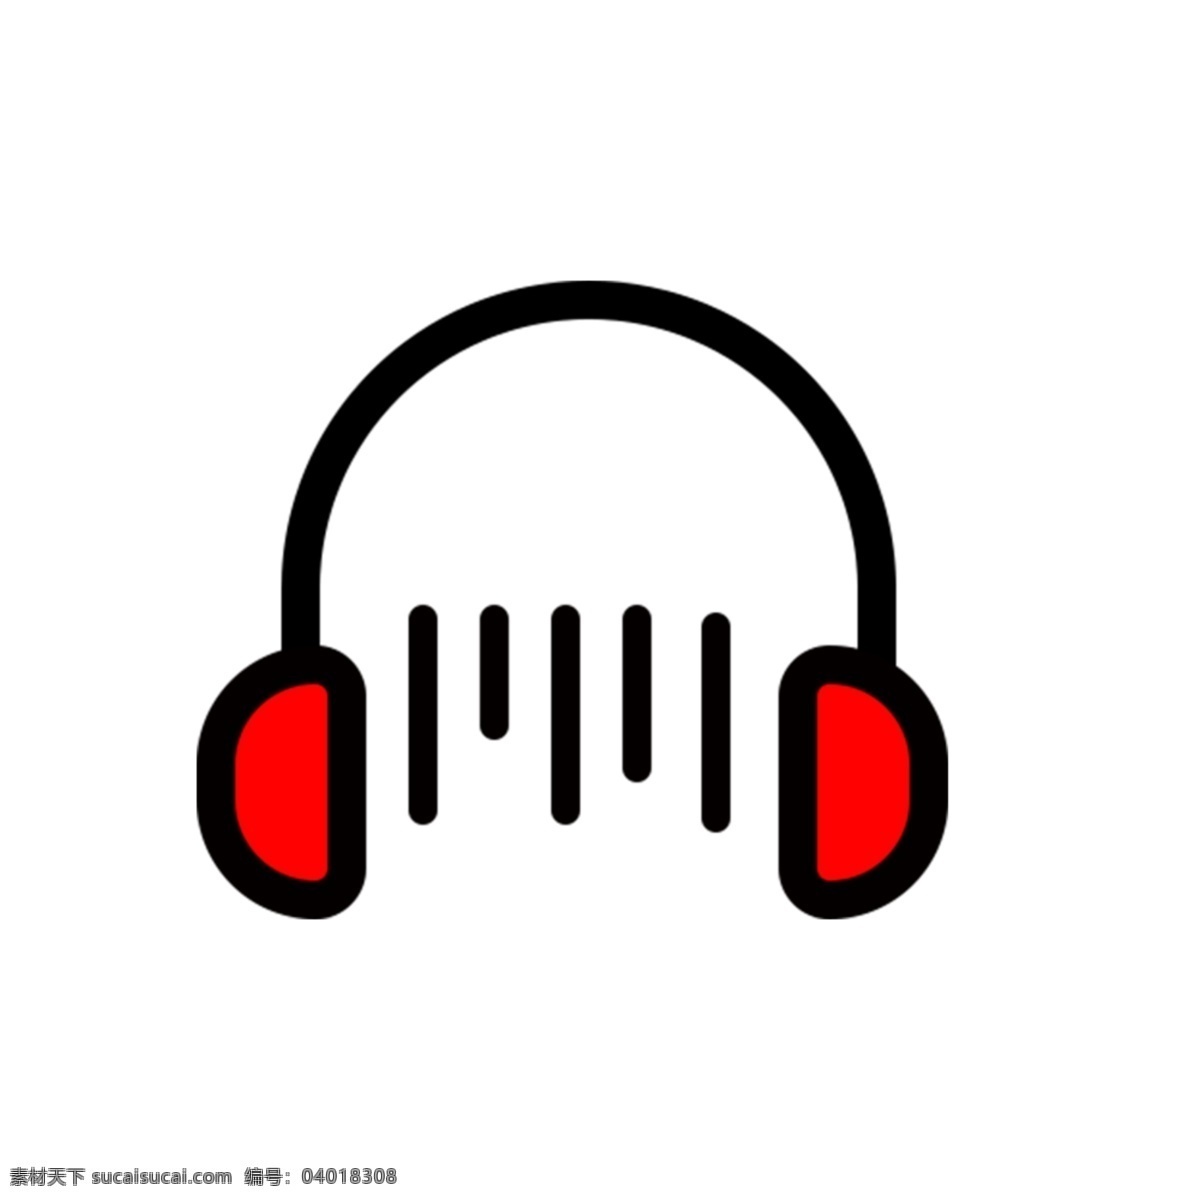 耳机 听音乐 电子设备 听歌 头戴式耳机 分层